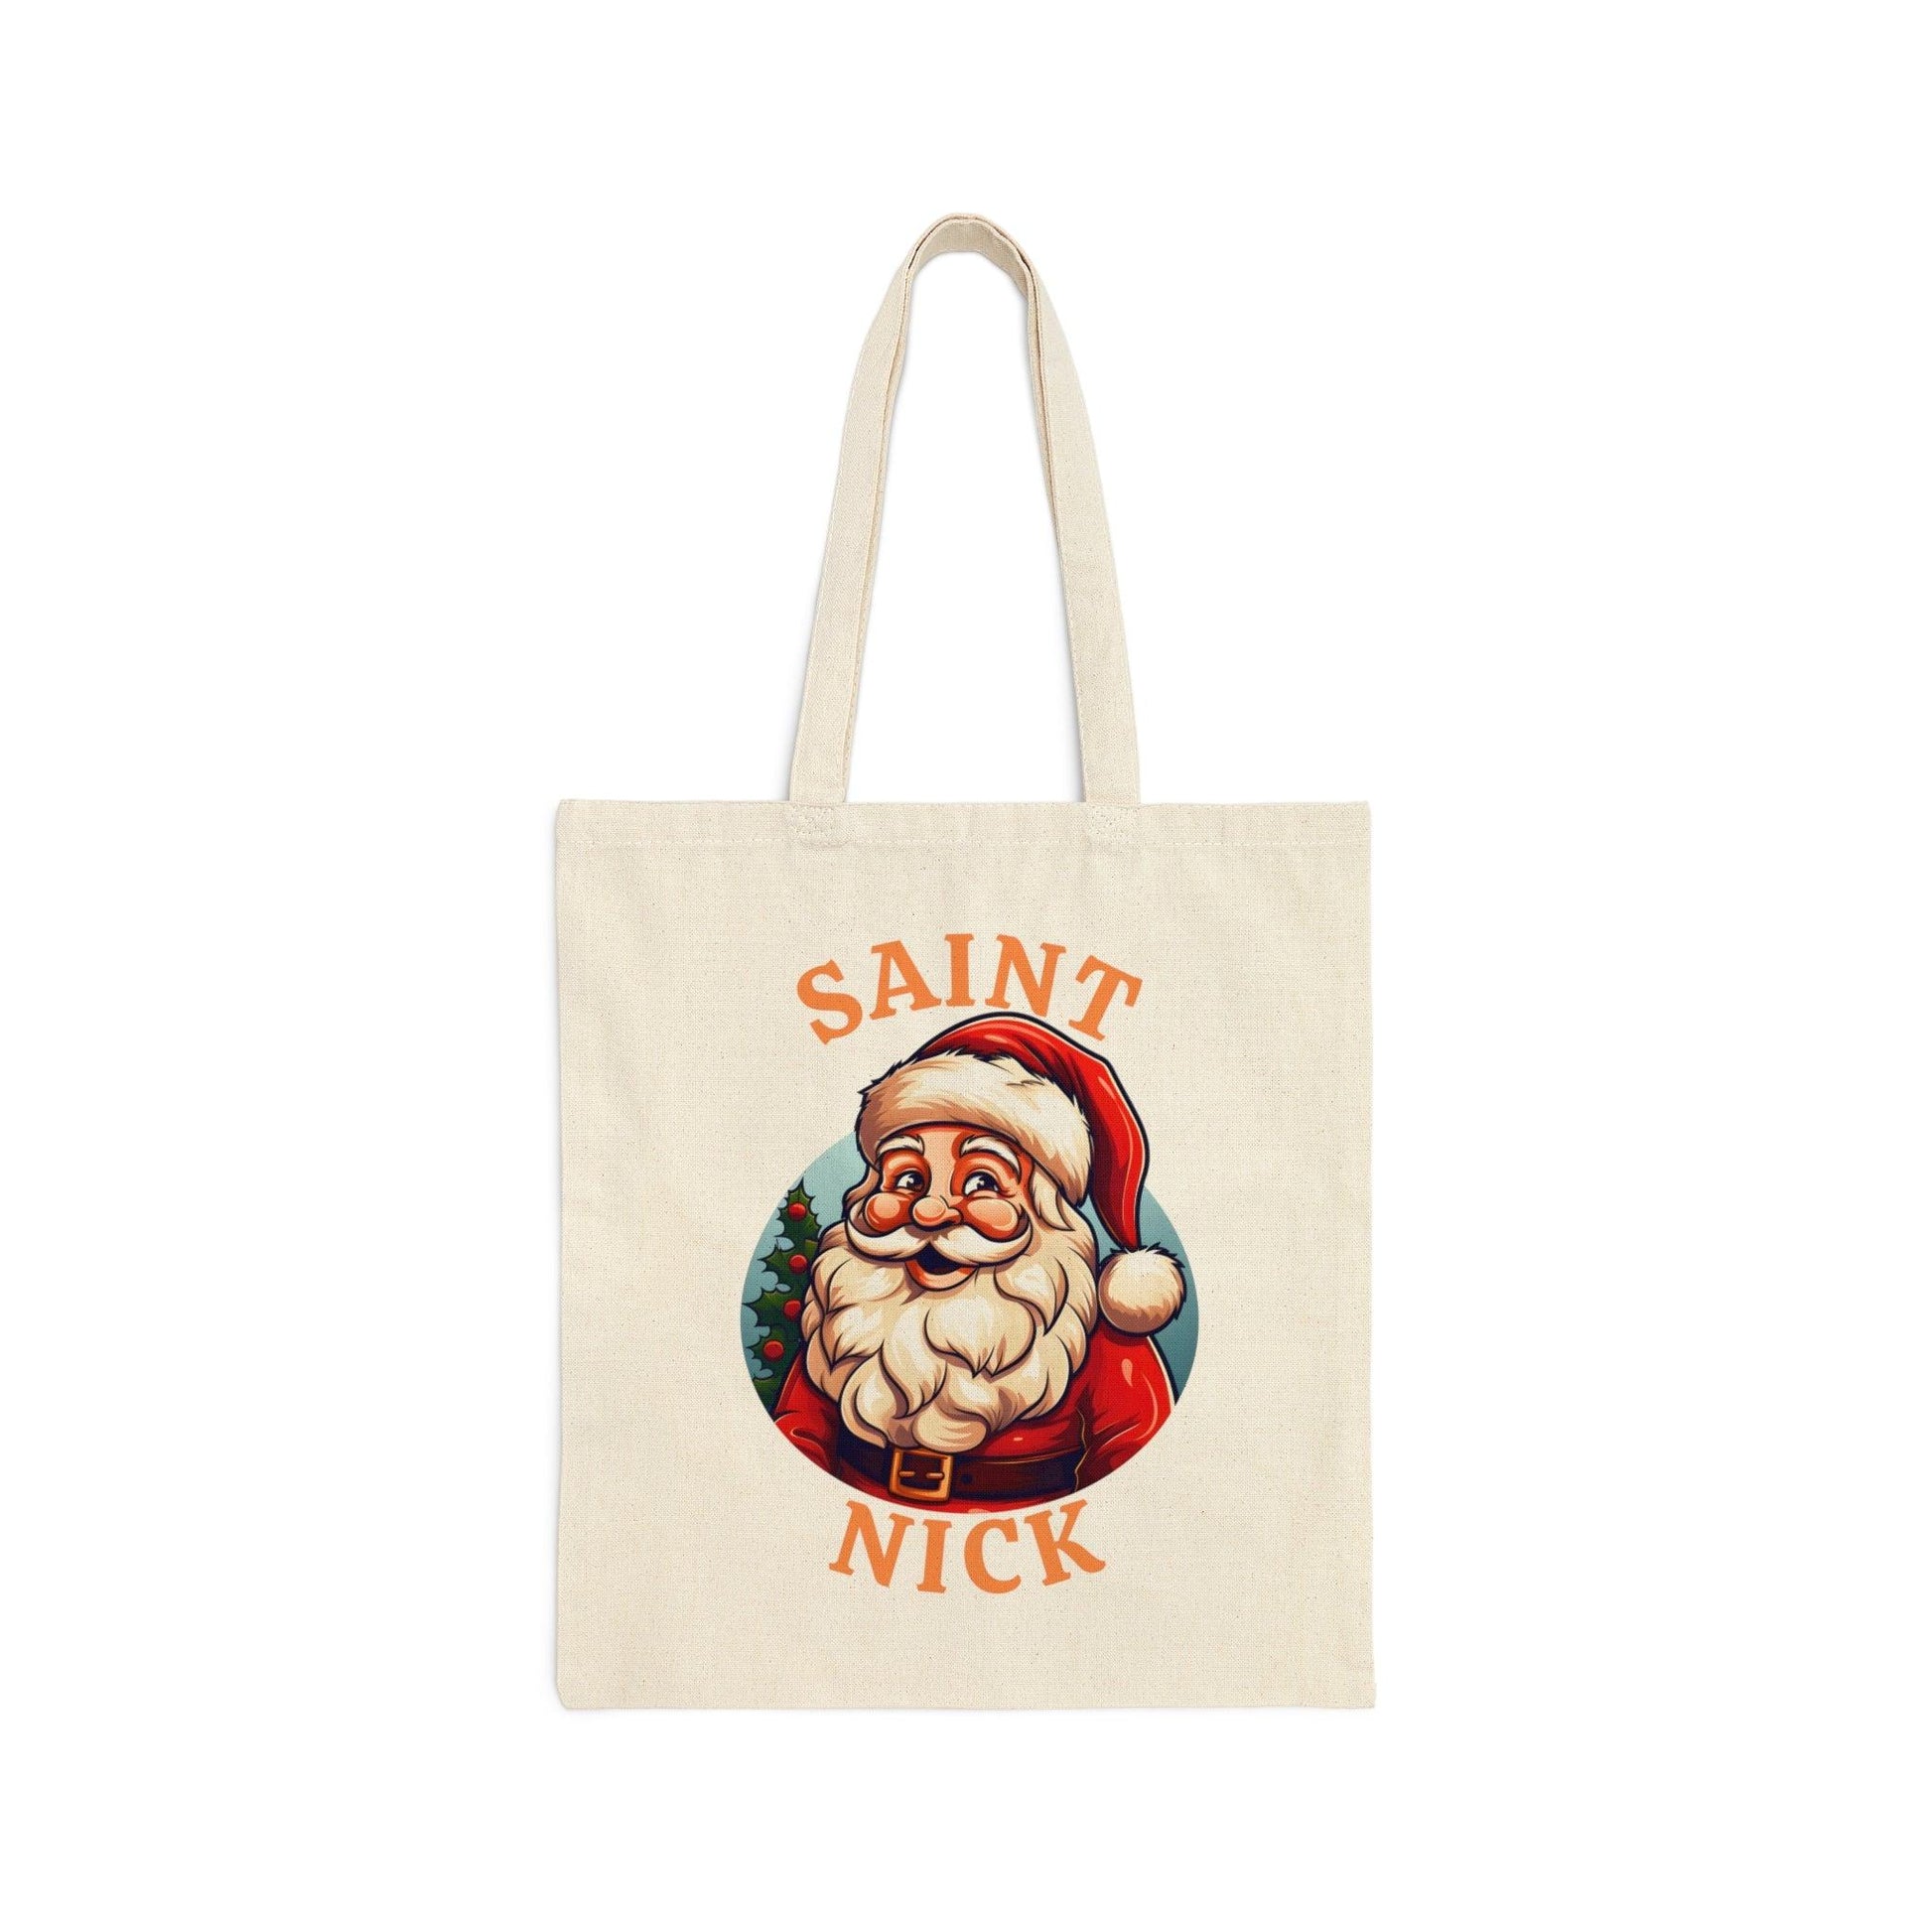 Santa Tote Bag Christmas Bag Saint Nick Tote Bag Santa Claus Totes Bag Canvas Tote Bag Shopping Bag Gift For Women Totes Birthday Gift Bag - Giftsmojo